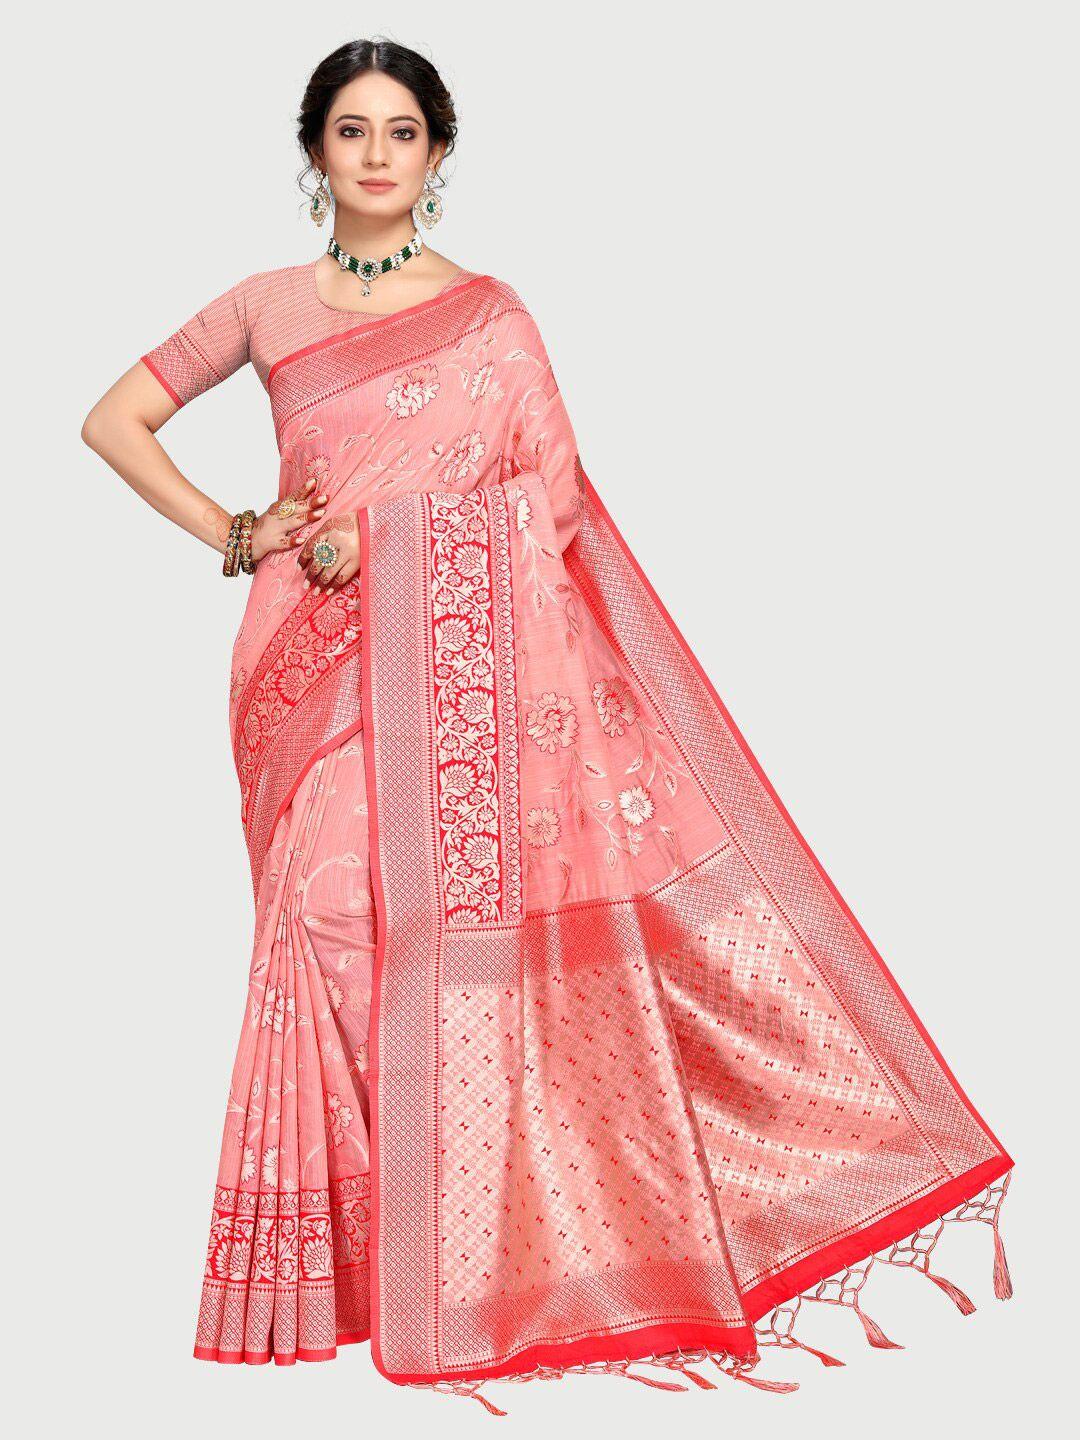 rekha maniyar rose & silver-toned woven design zari silk blend banarasi saree